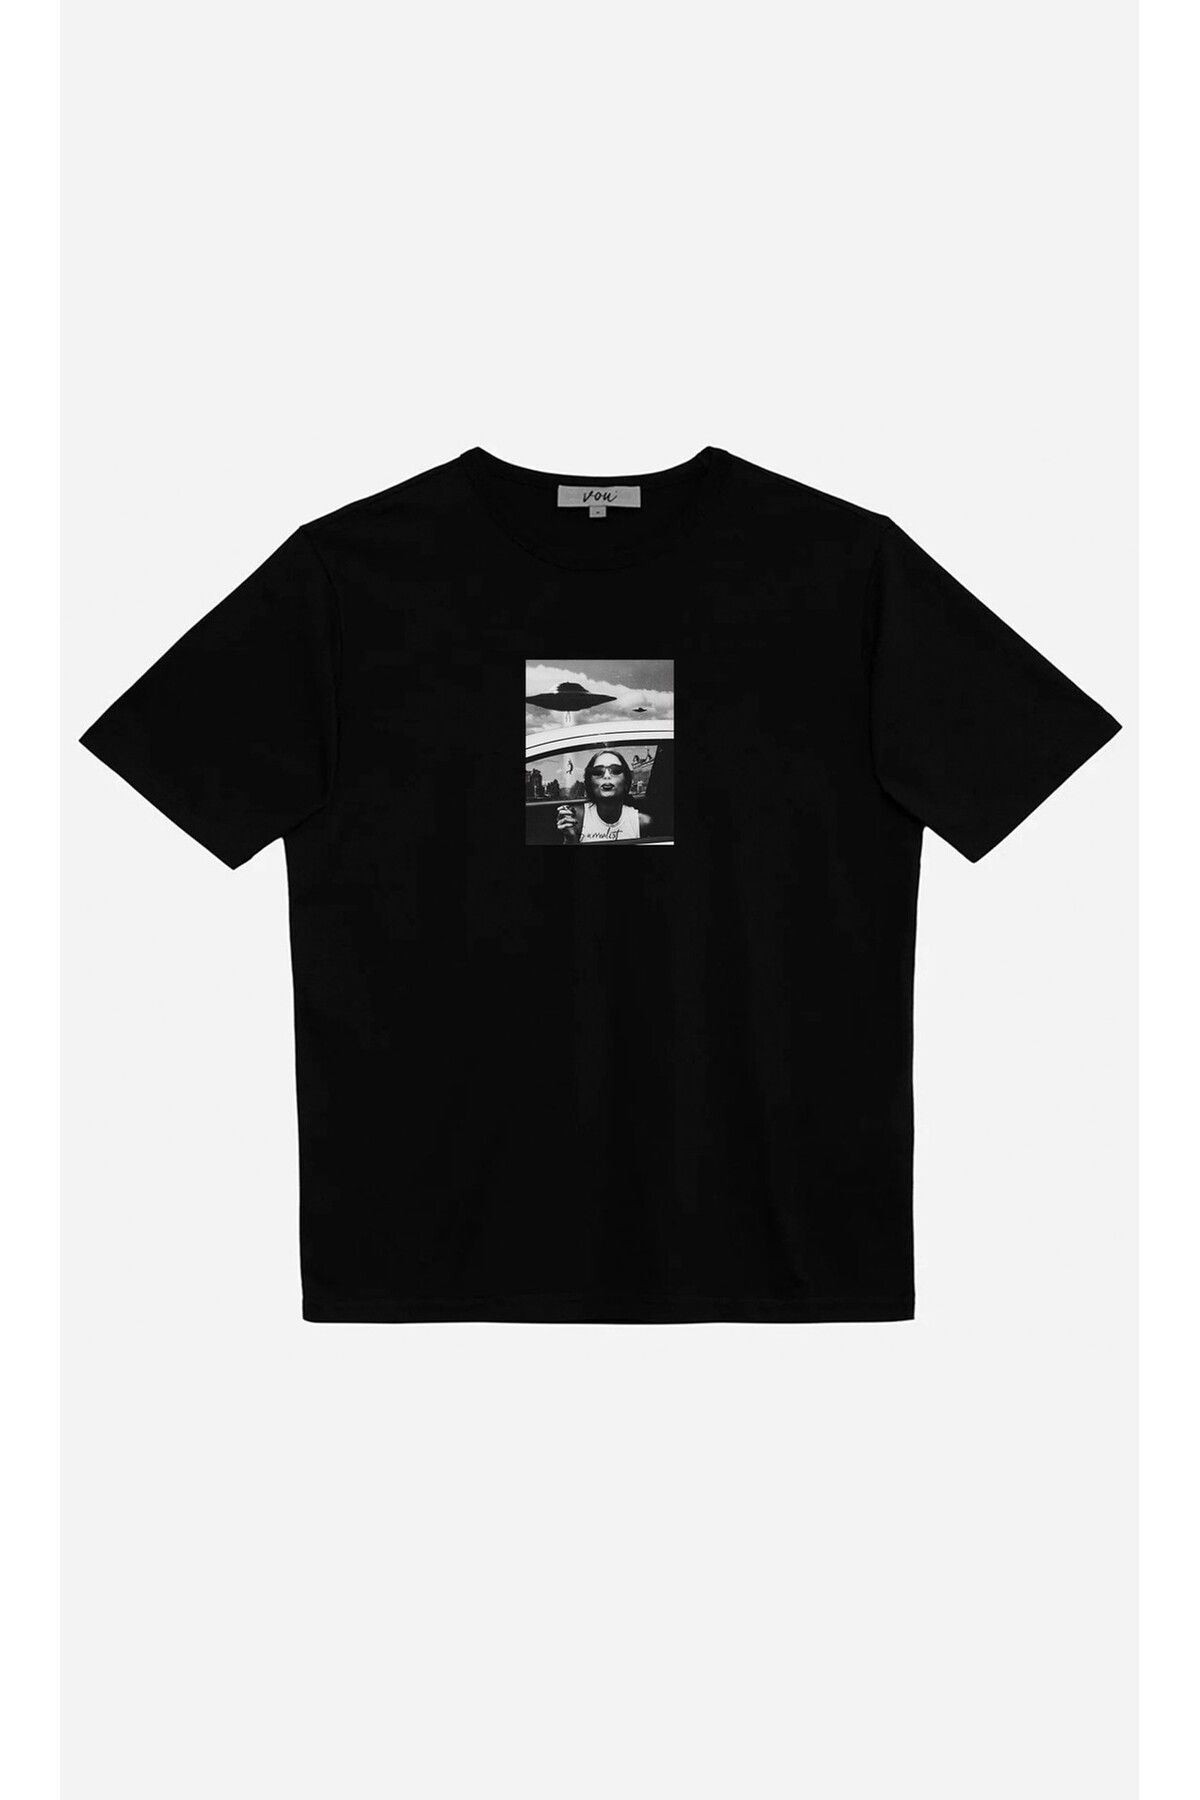 VOU 1025- Surrealist Oversize Unisex T-Shirt